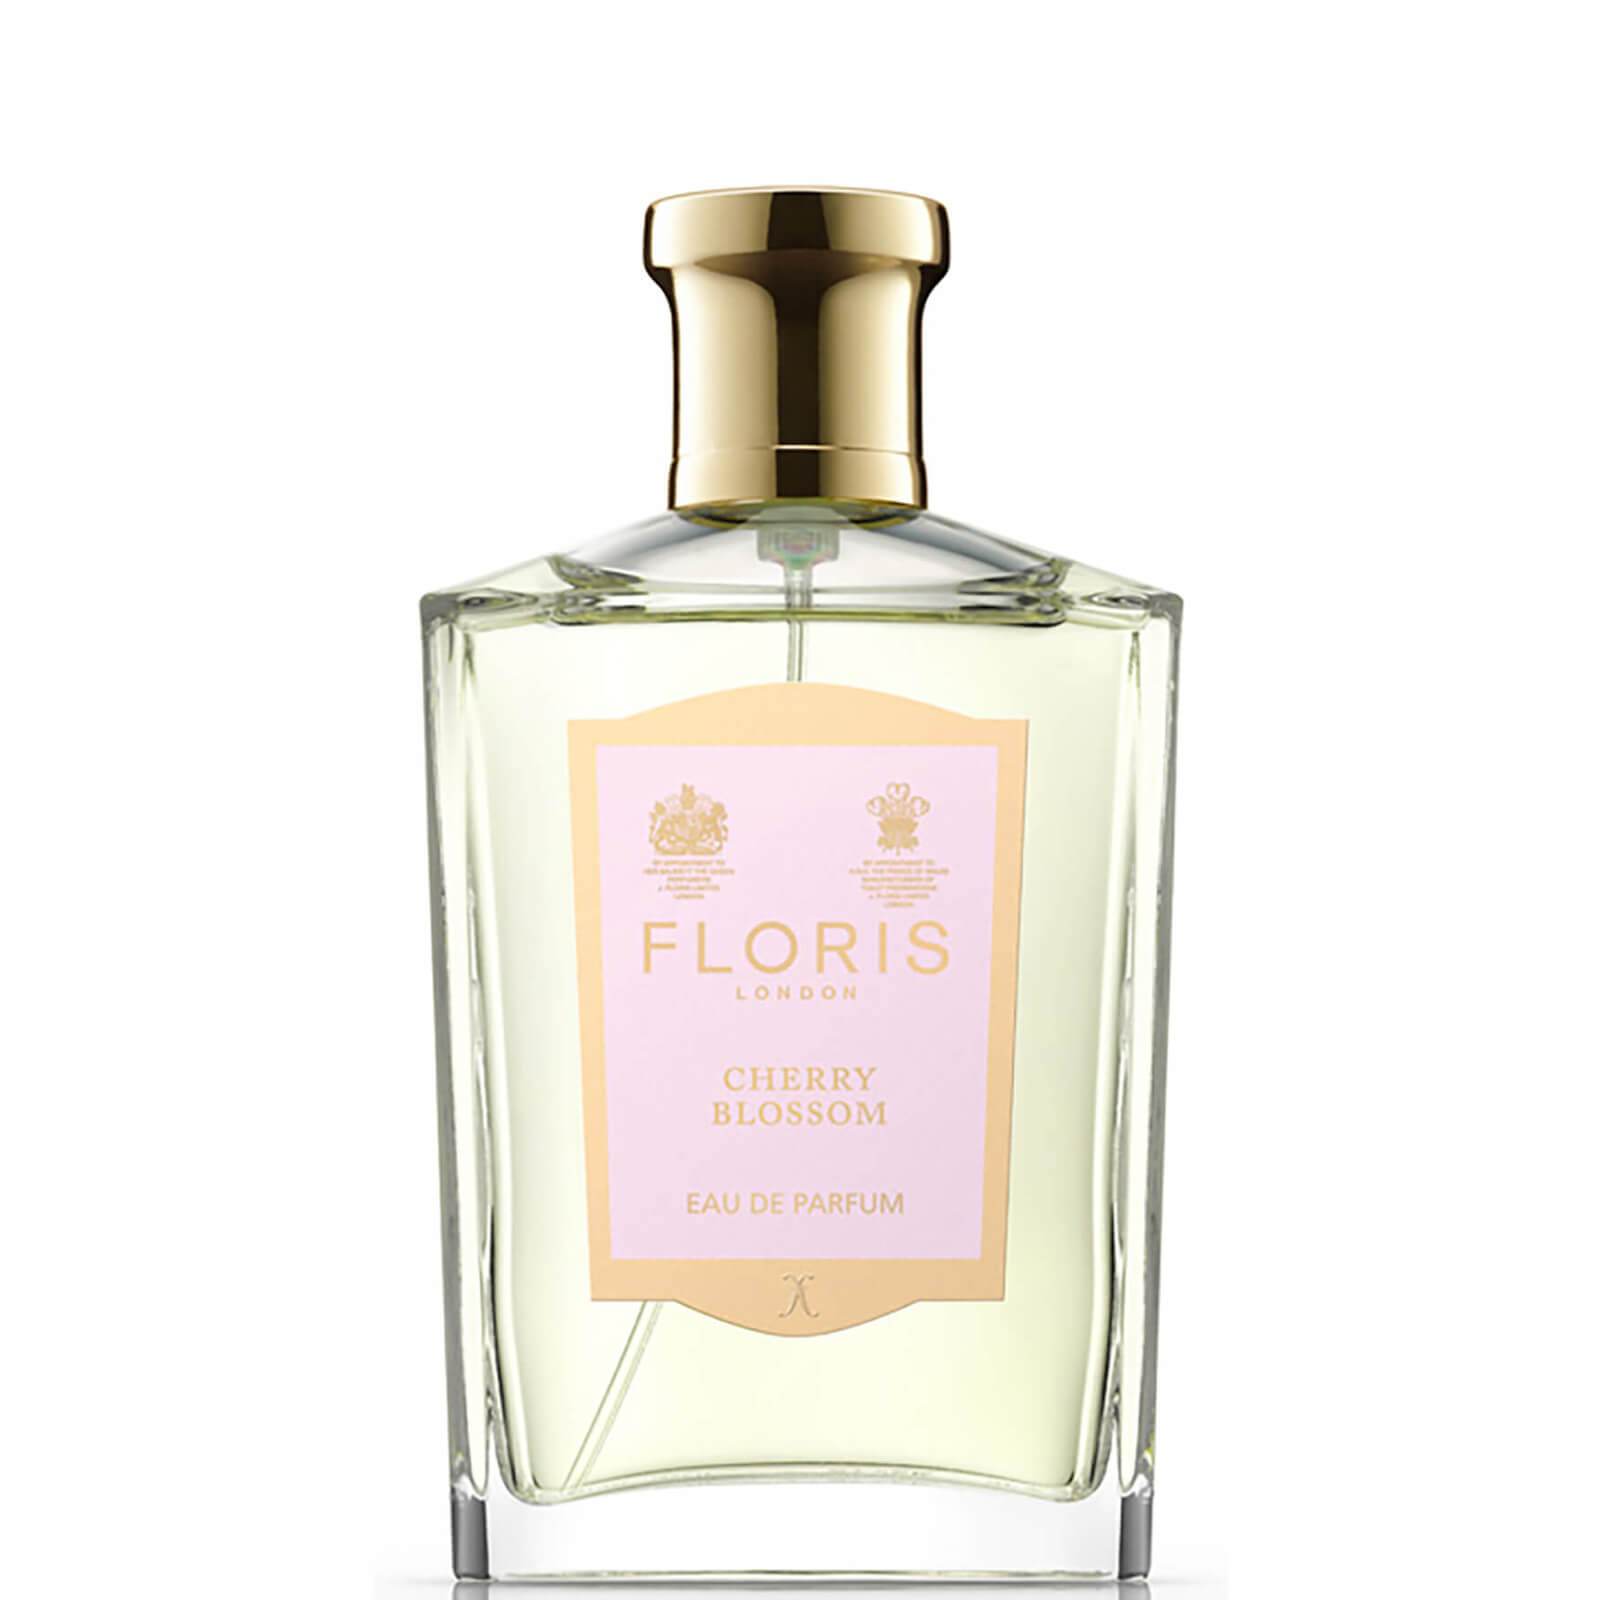 Photos - Women's Fragrance Floris London Cherry Blossom Eau de Parfum 100ml 37014 